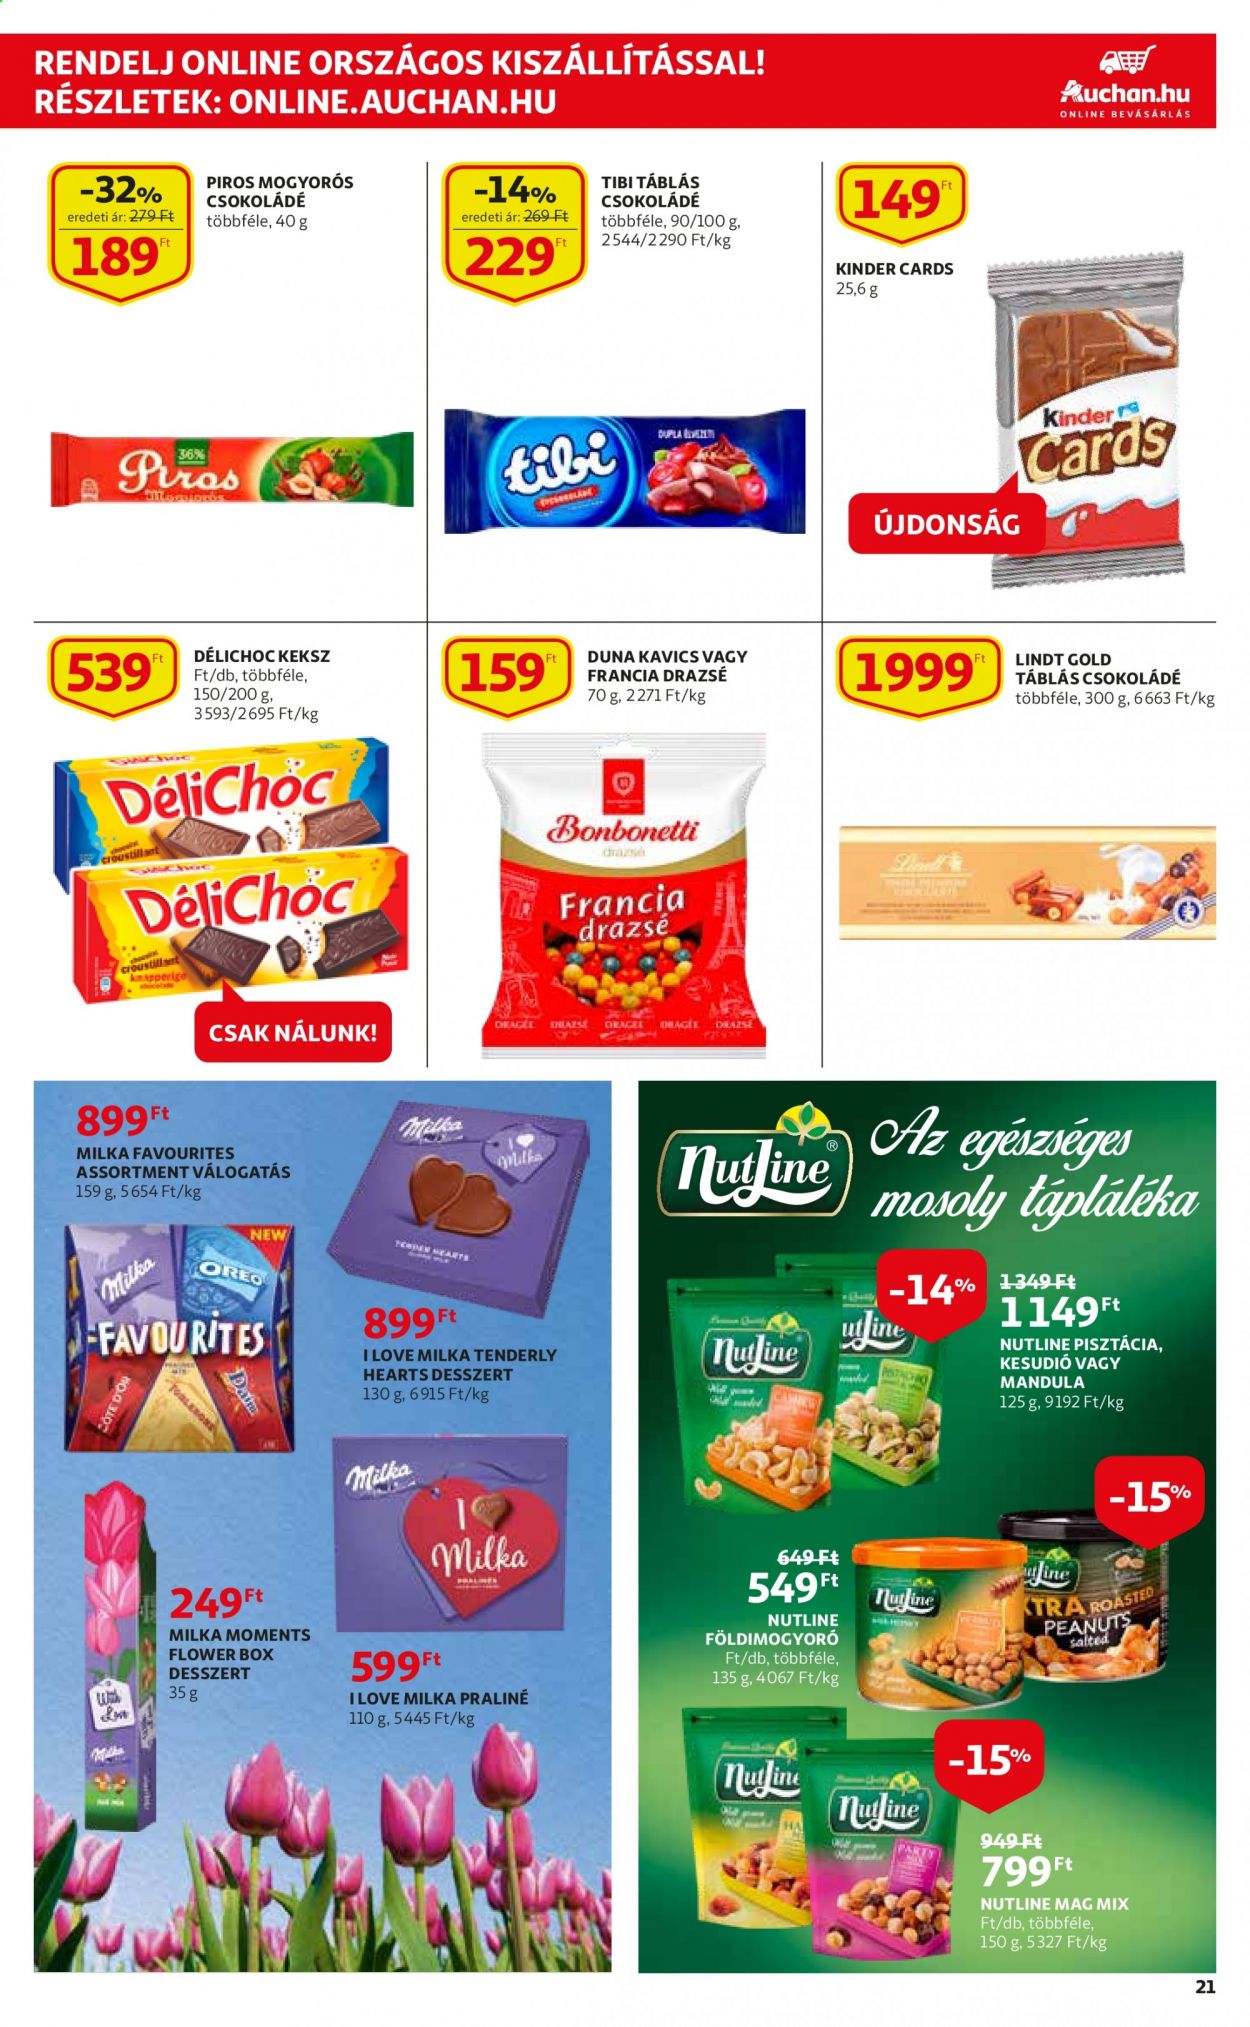 thumbnail - Auchan akciós újsága  - 2021.03.04 - 2021.03.10 - Akciós termékek - Milka, Oreo, csokoládé, keksz, kesudió, mandula, pisztácia, földimogyoró.  21. Oldal